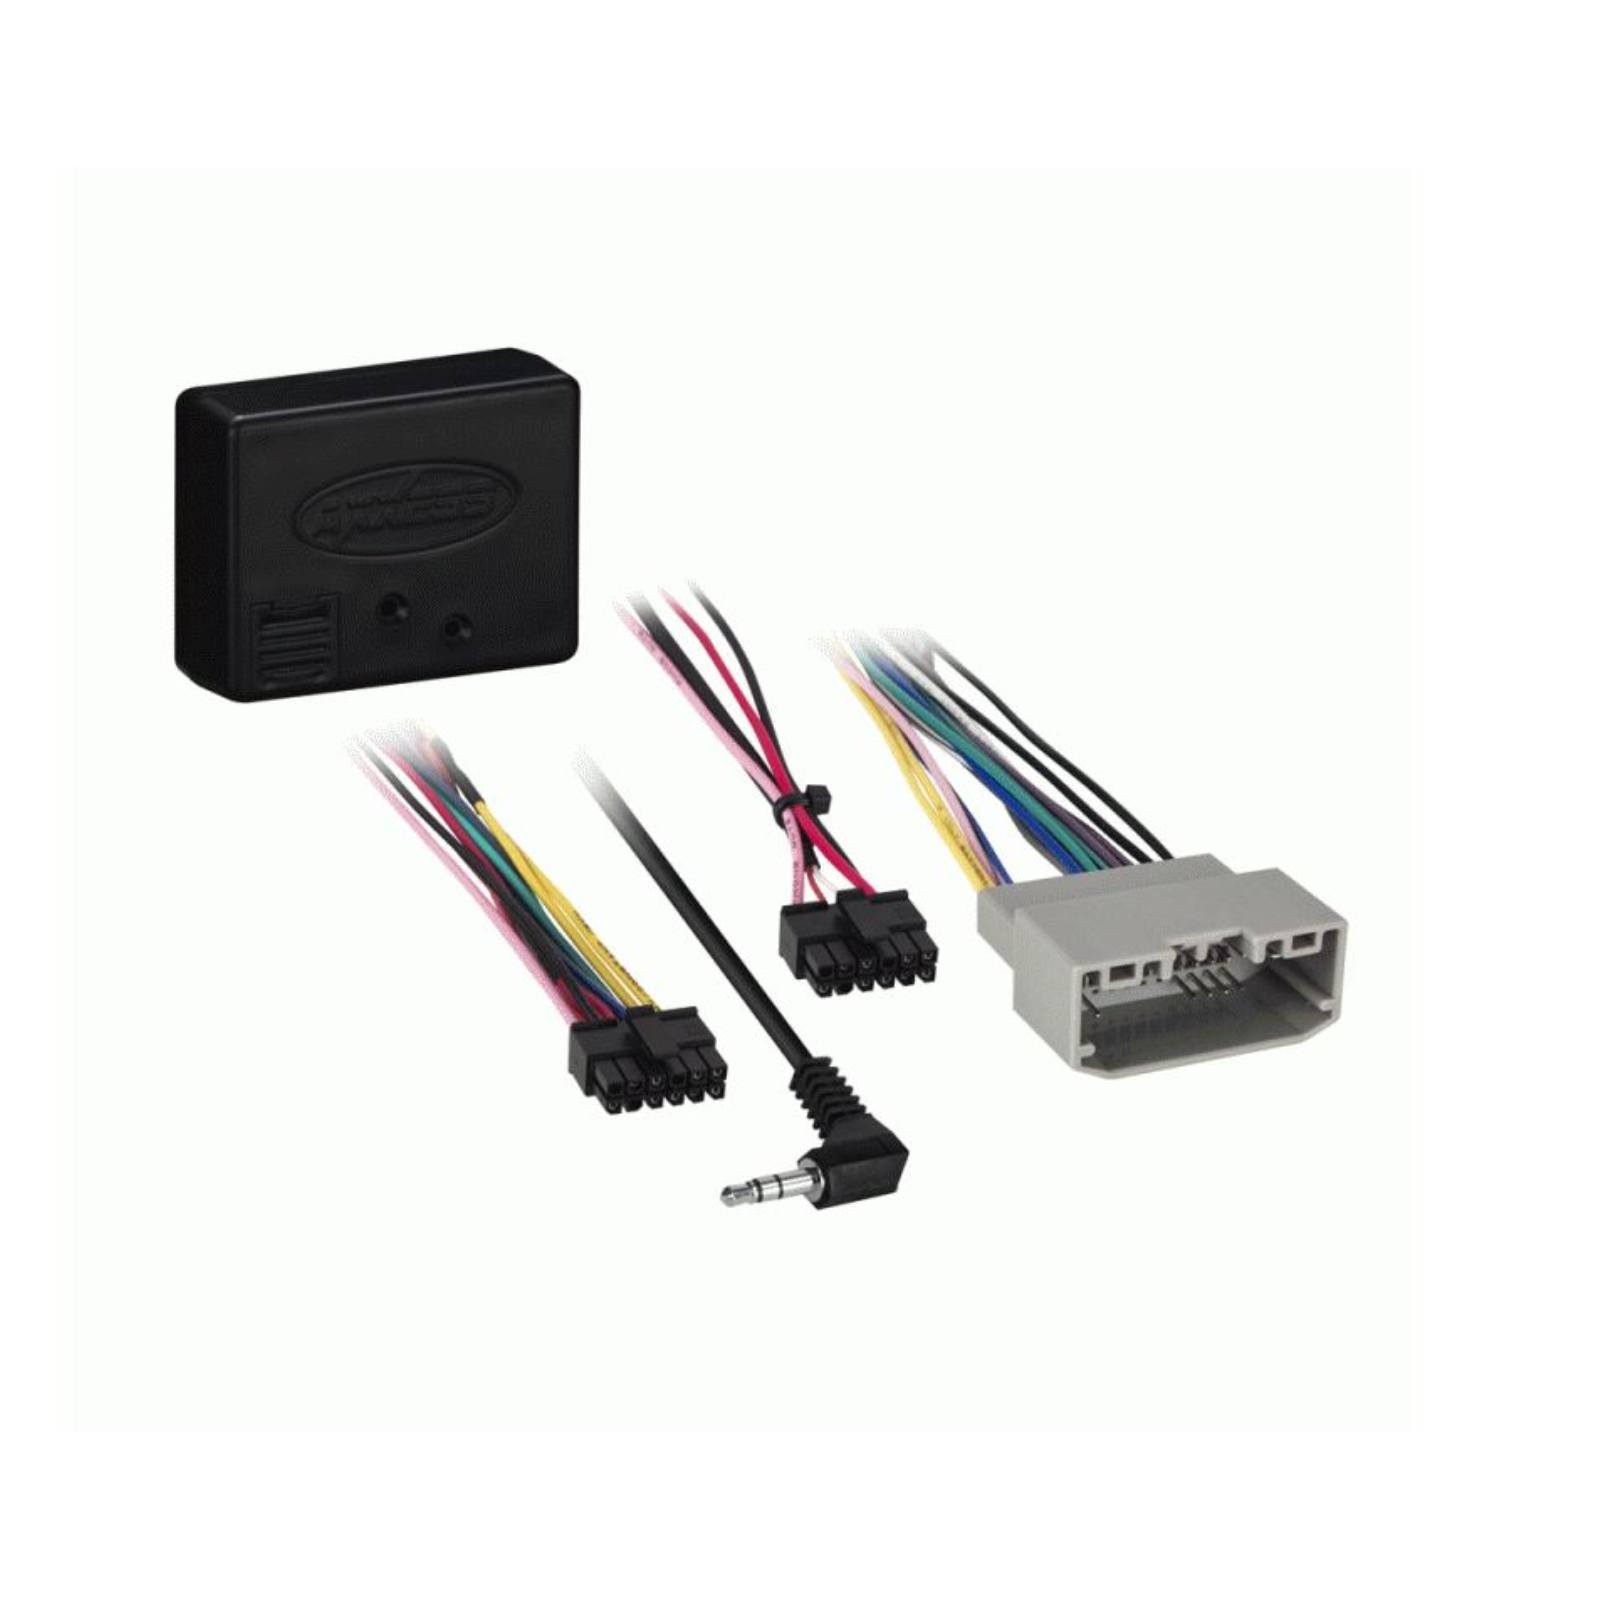 JVC 2DIN Receiver, Dash Kit, Wiring Interface, Antenna